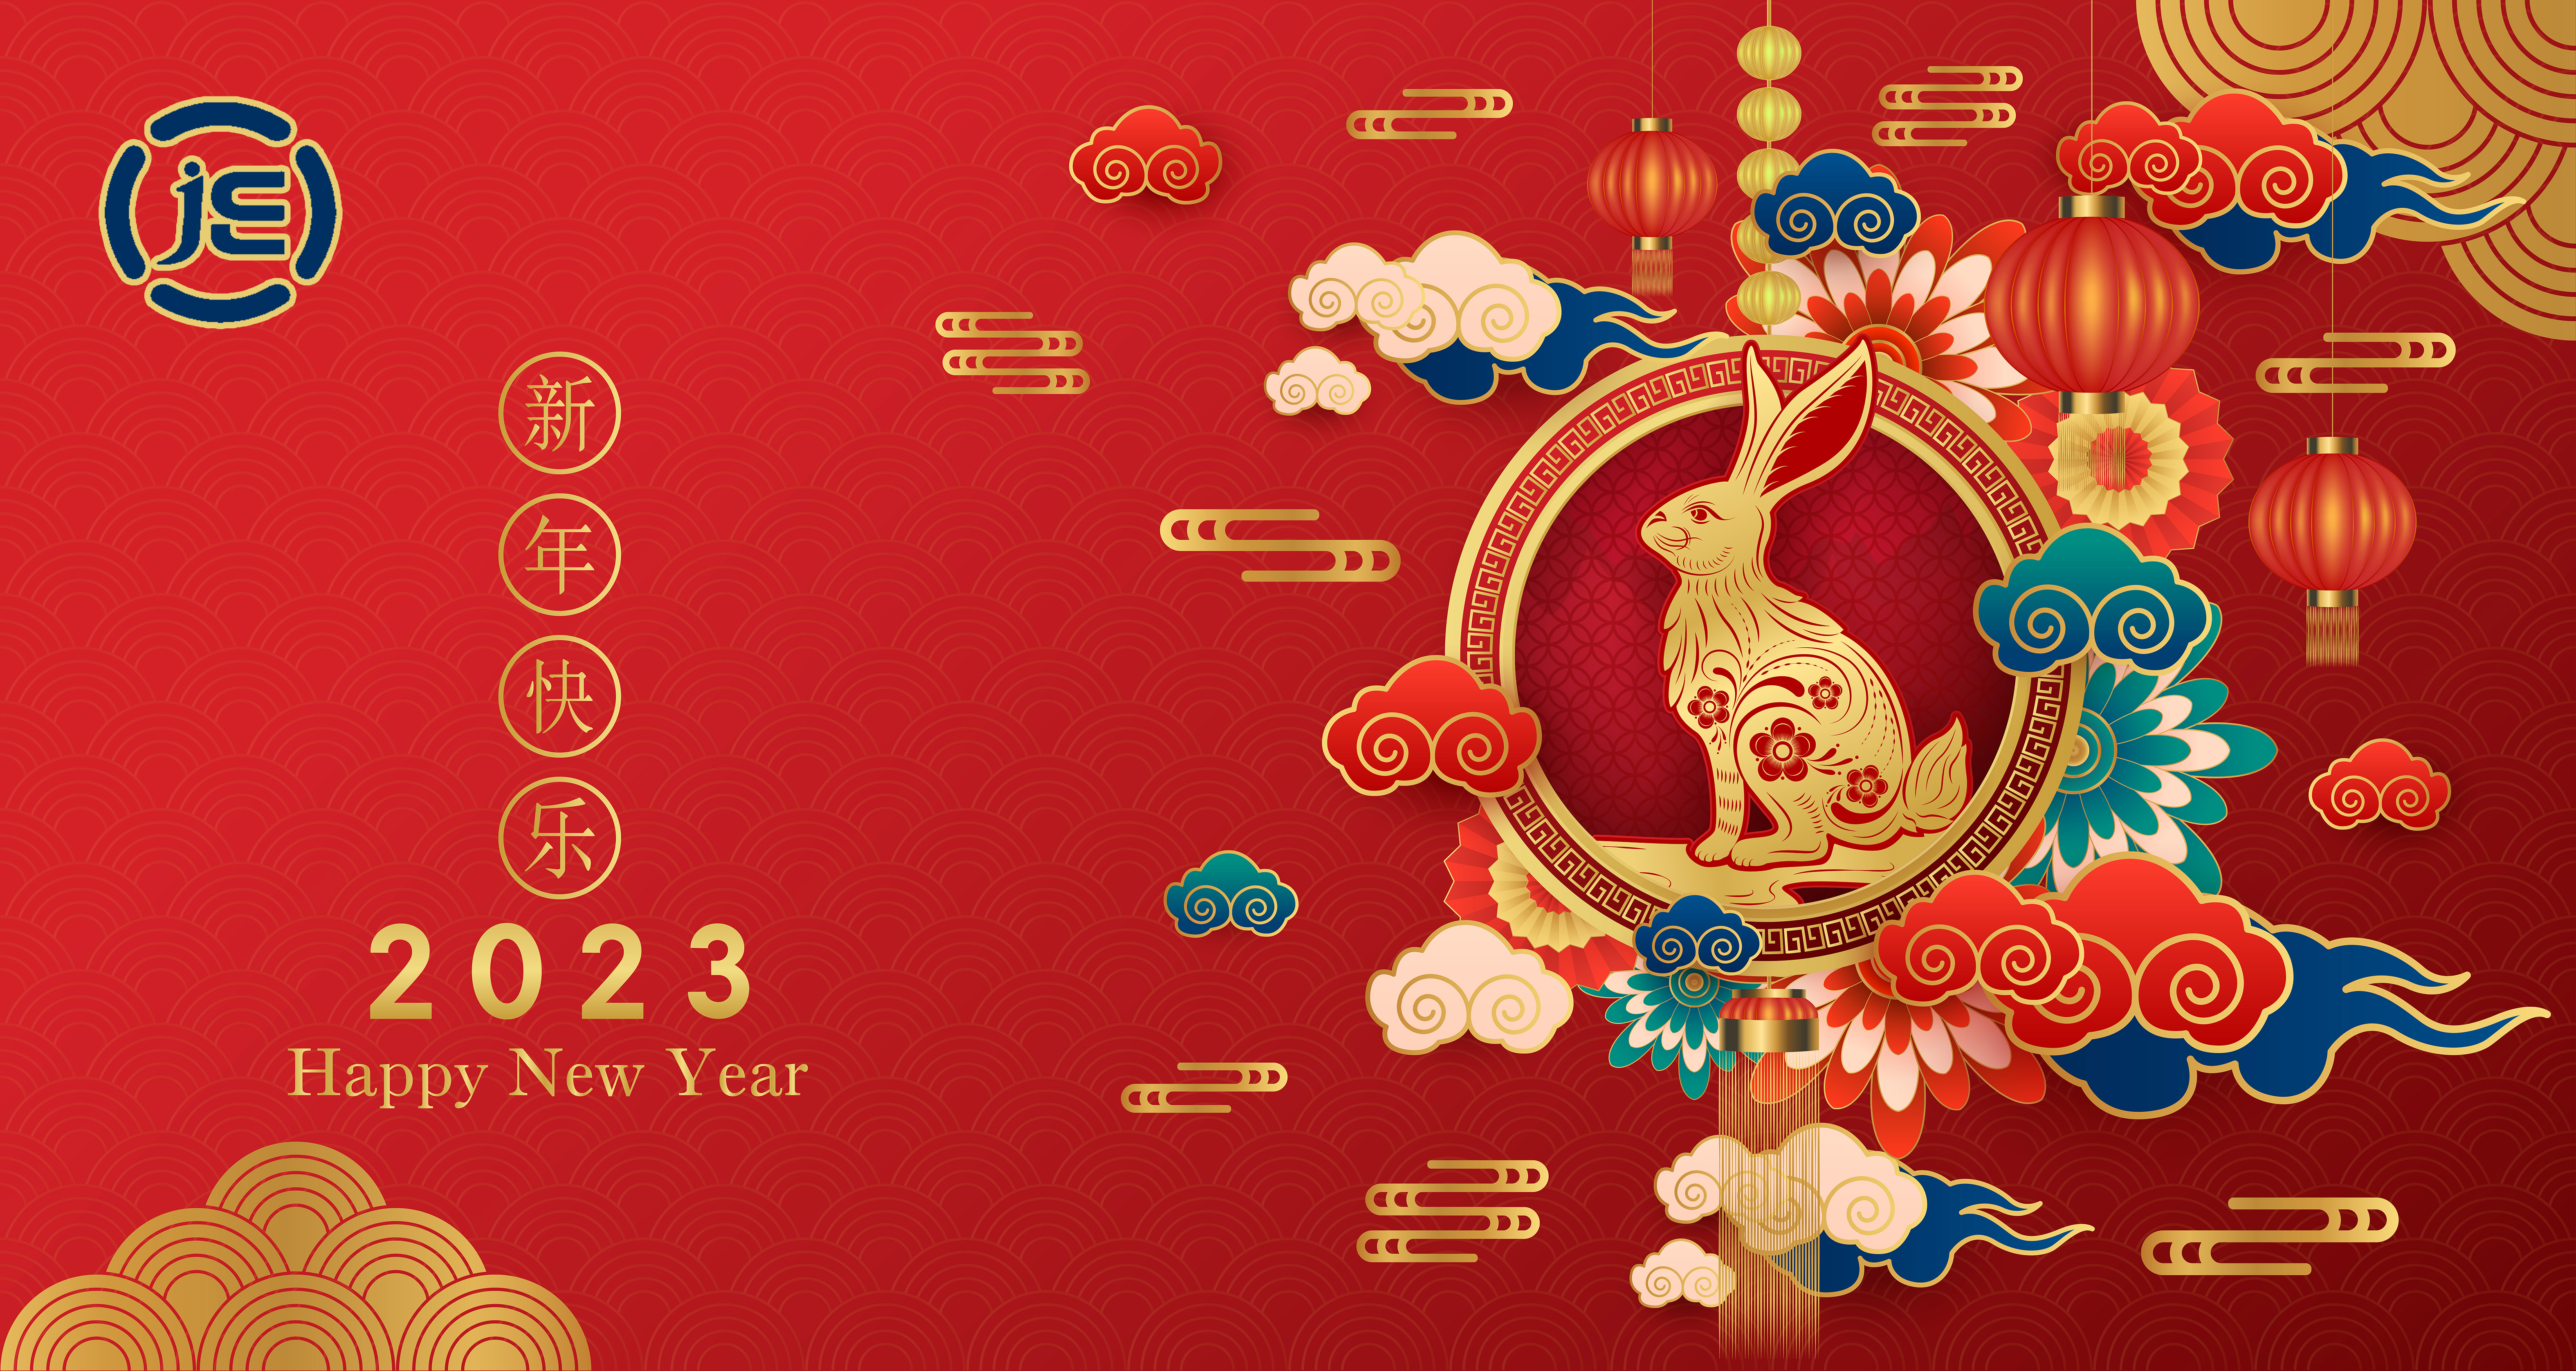 A JE Lighting kínai újévi ünnepe